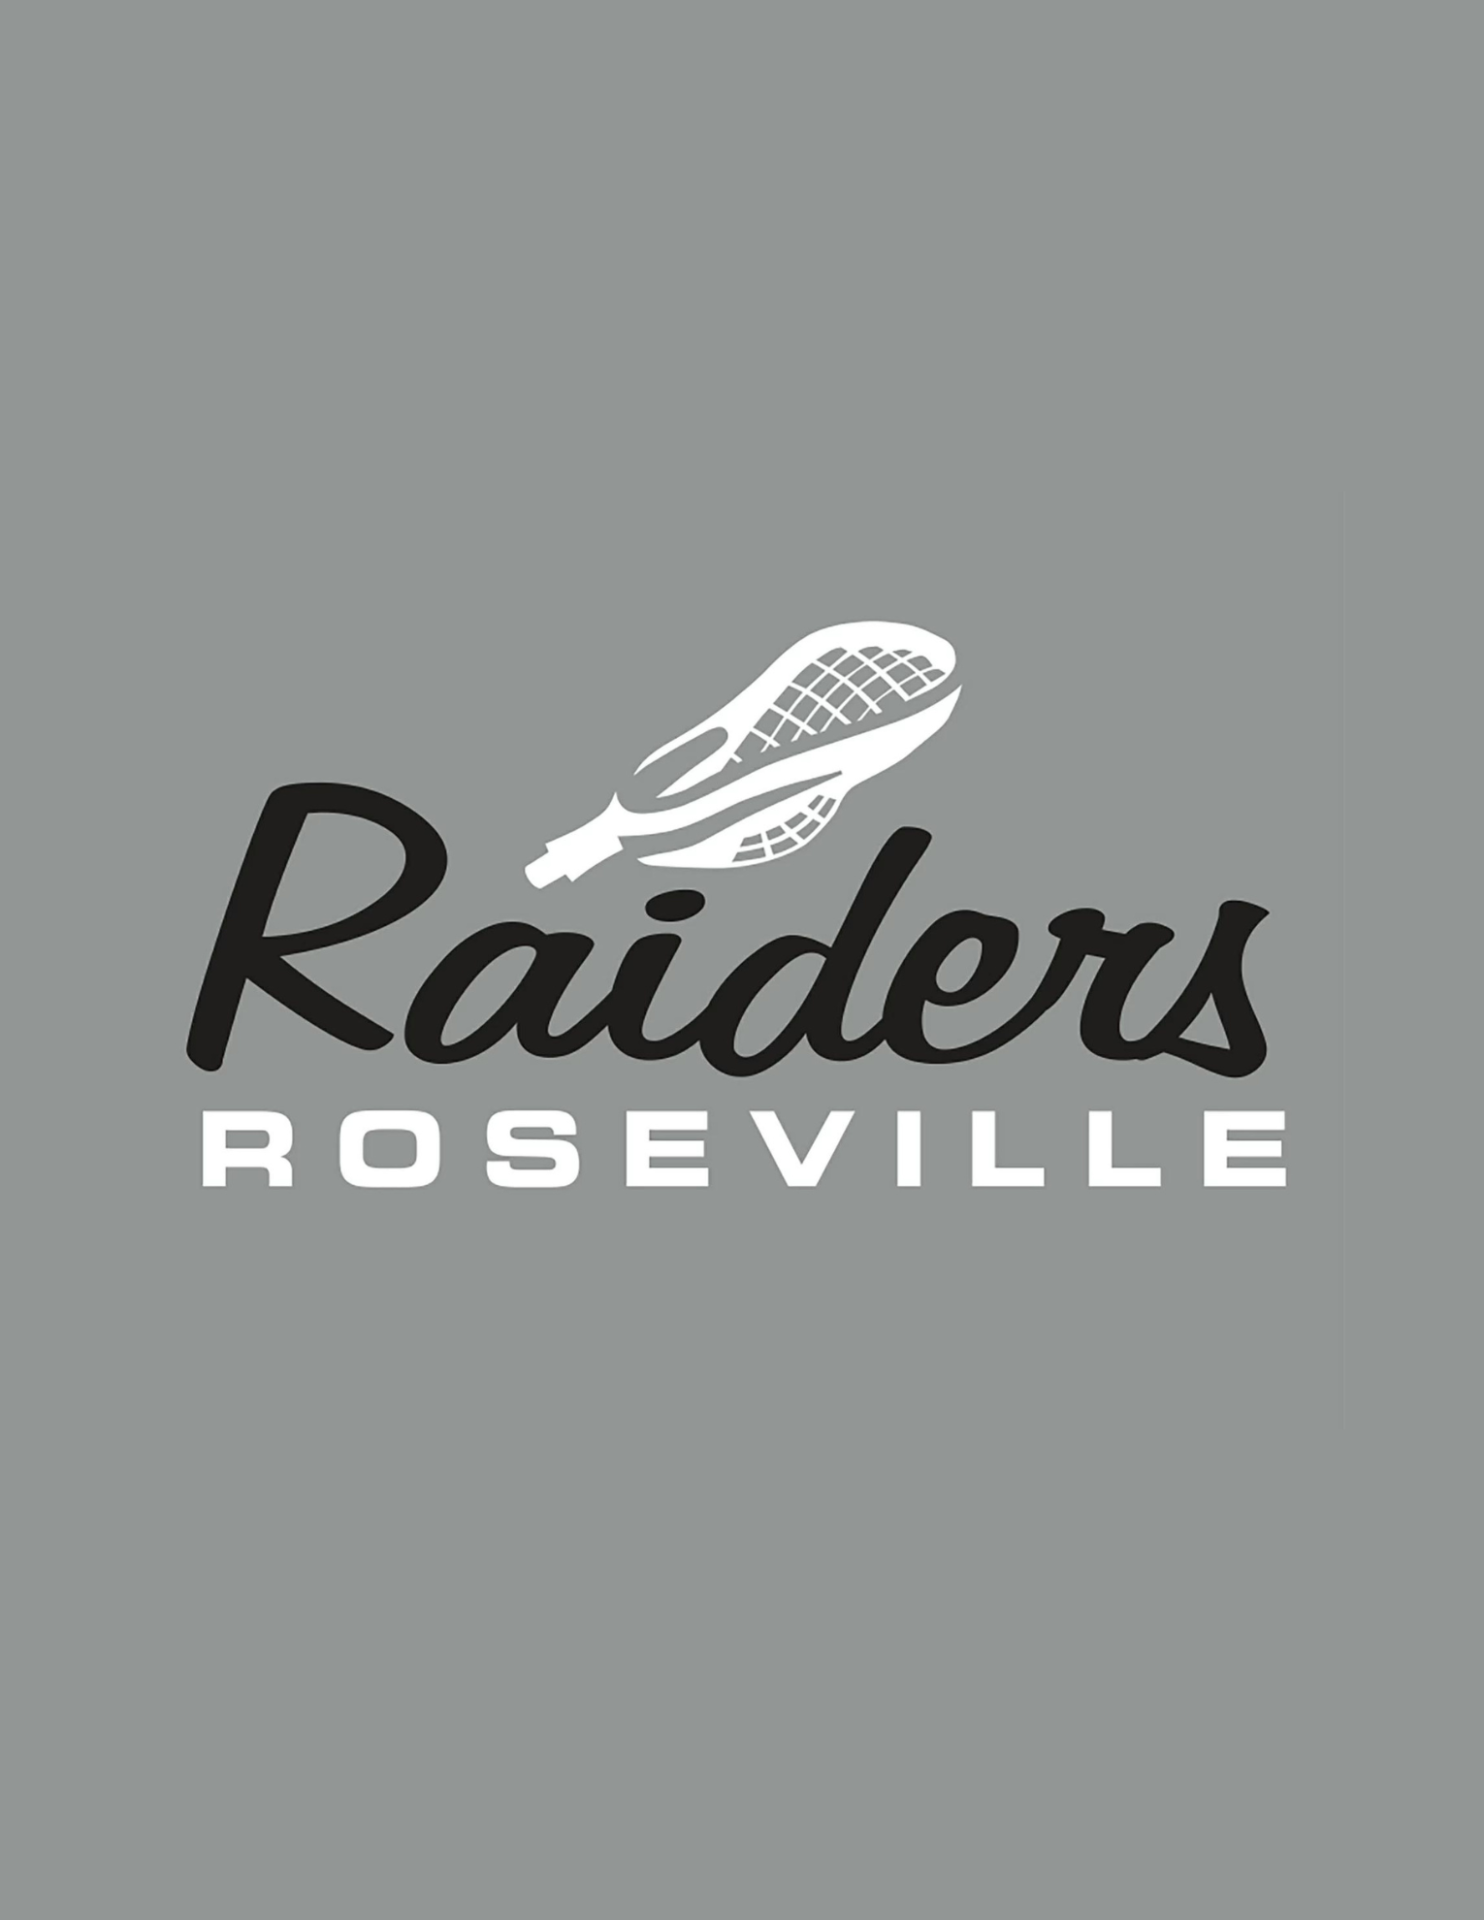 Raiders Roseville